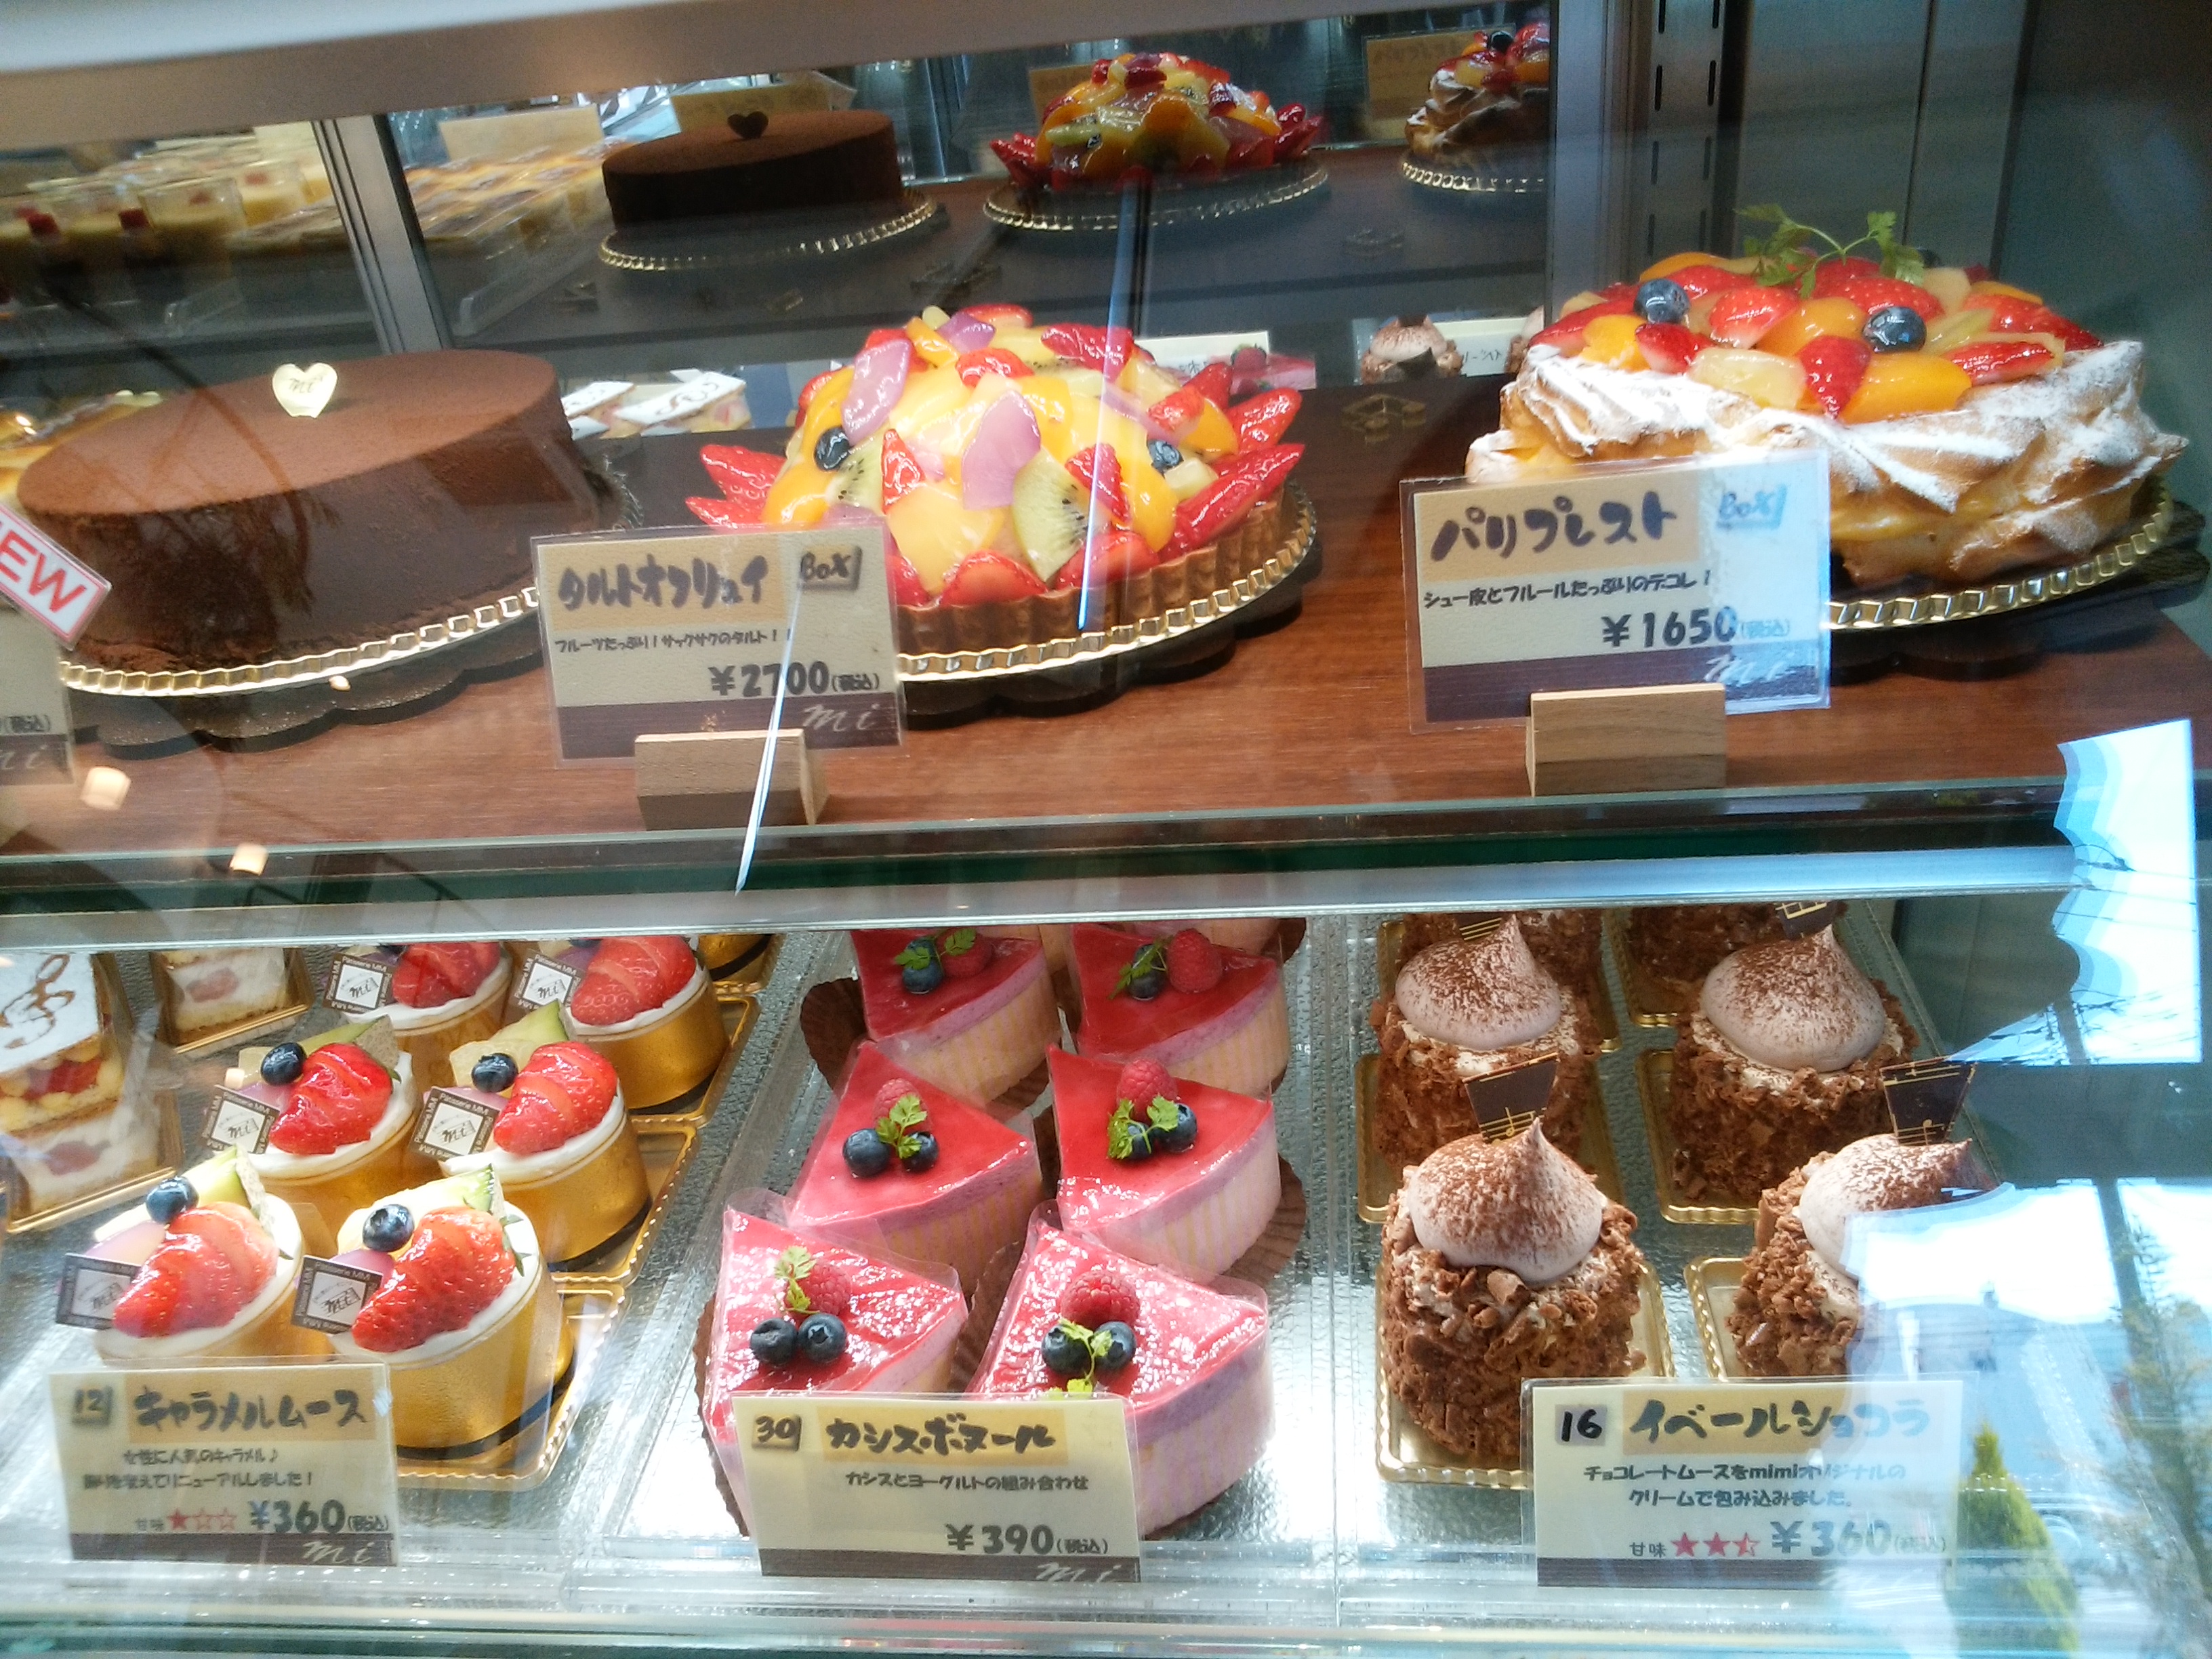 お菓子の家ミミ 富士市 三度の飯よりケーキ好き 三重県にもっとケーキバイキングを